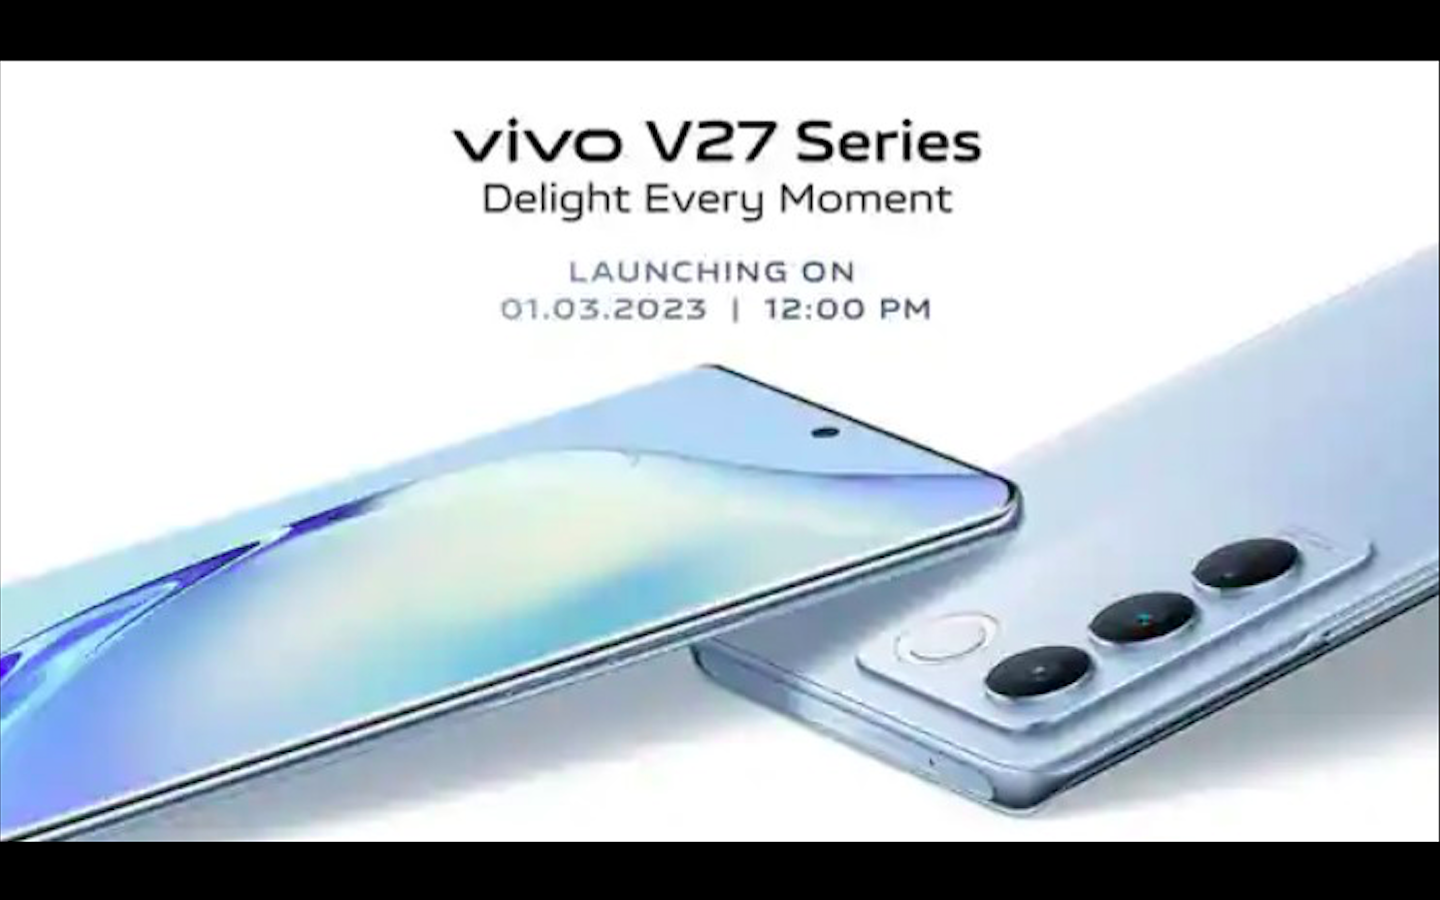 مواصفات هاتف الفئة المتوسطة Vivo v27